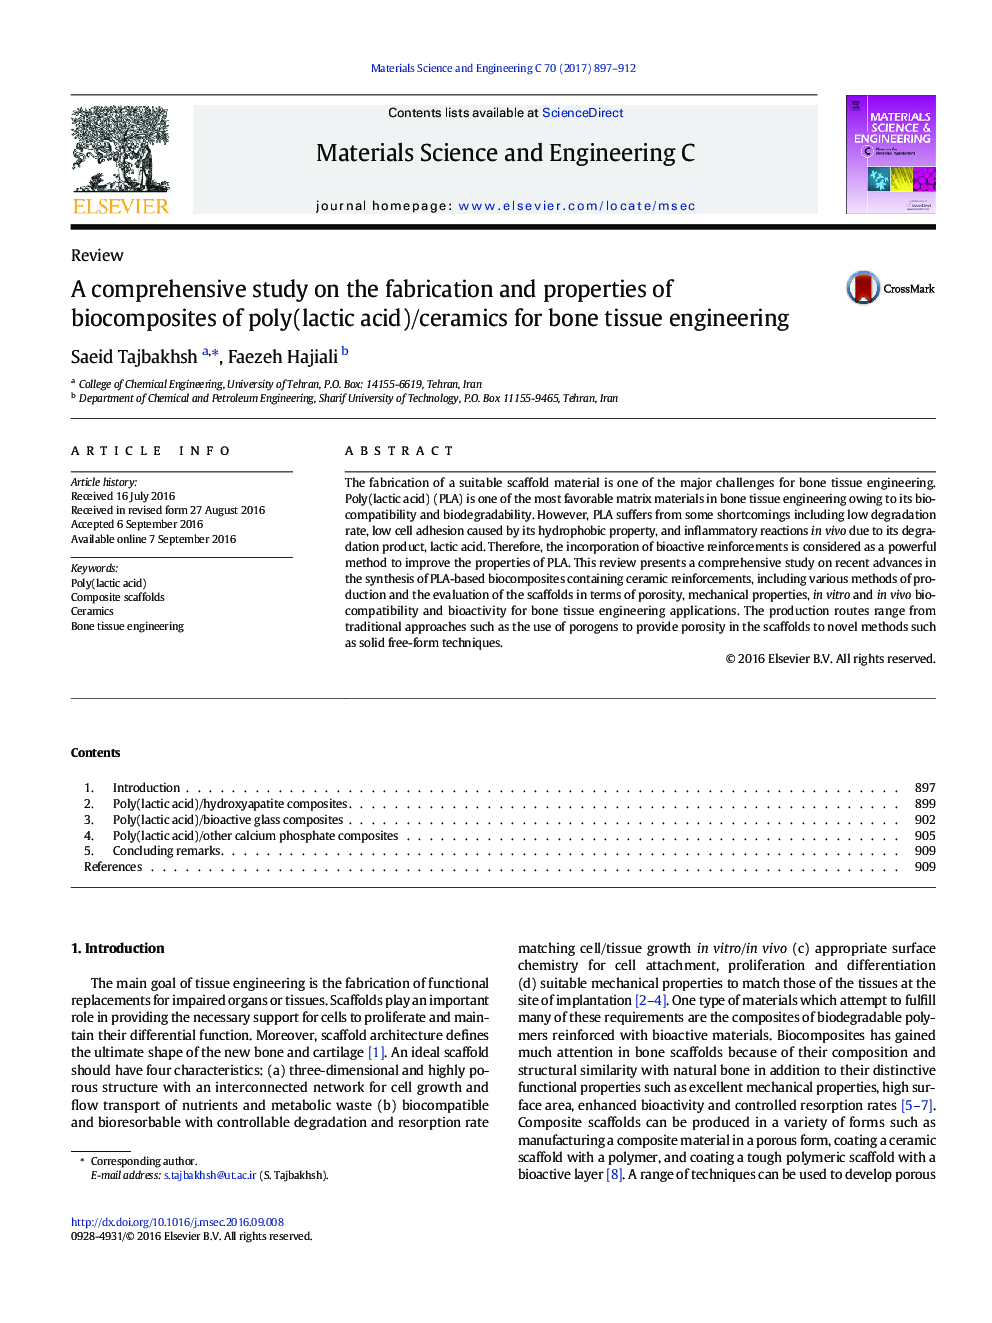 مطالعات جامع در مورد ساخت و خواص بیومواسپید های پلی (اسید لاکتیک) / سرامیک برای مهندسی بافت استخوان